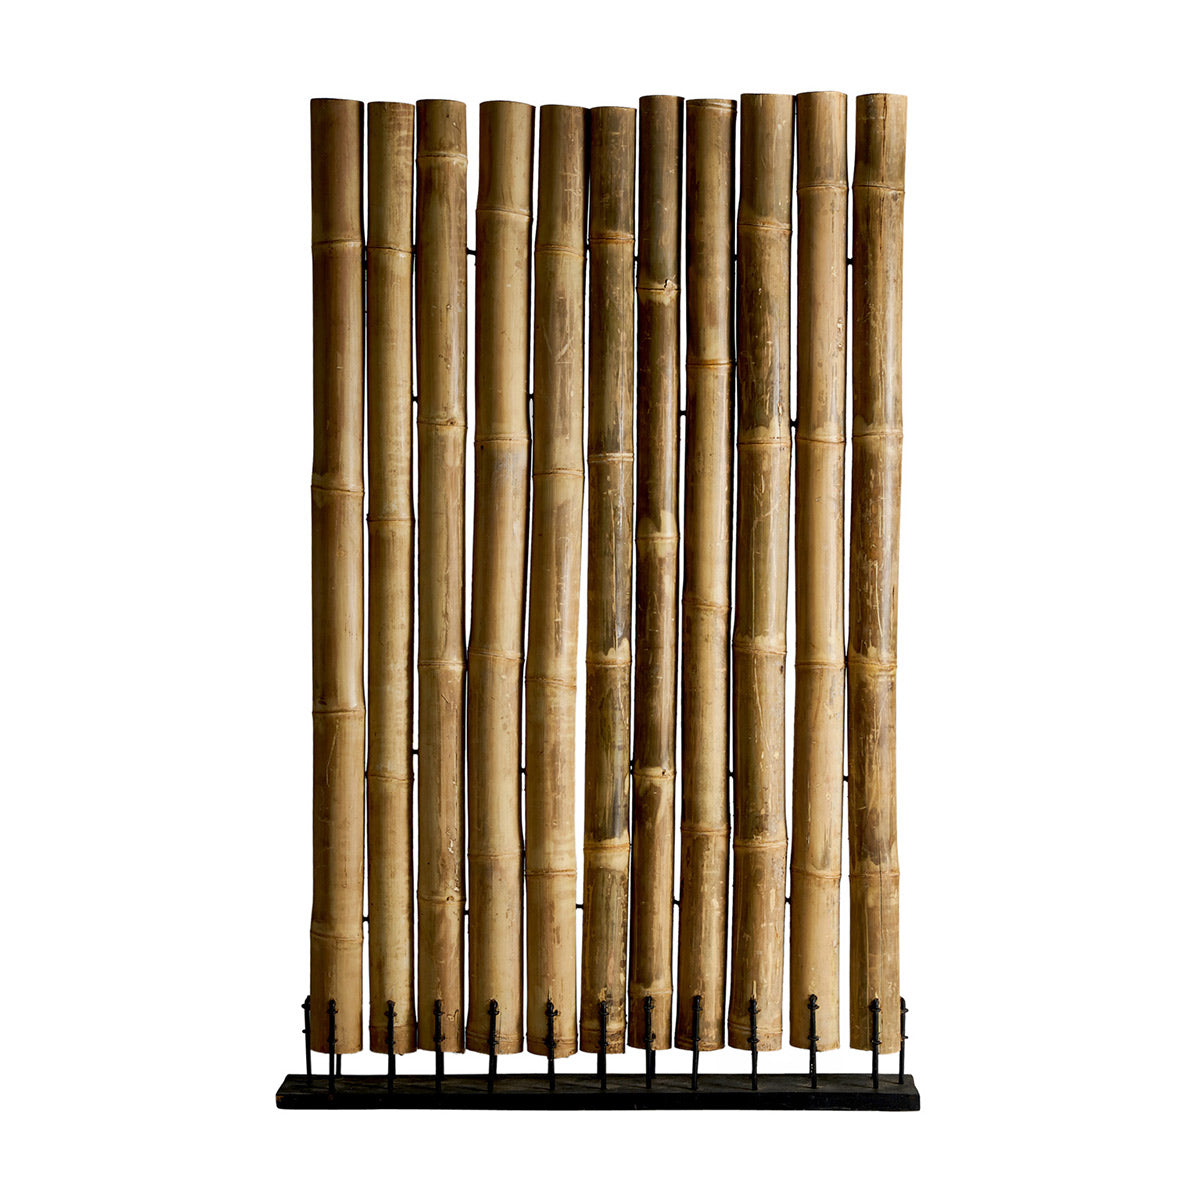 Trópusi stílusú, natúr színű, bambuszszárakból álló térelválasztó fém talapzaton.